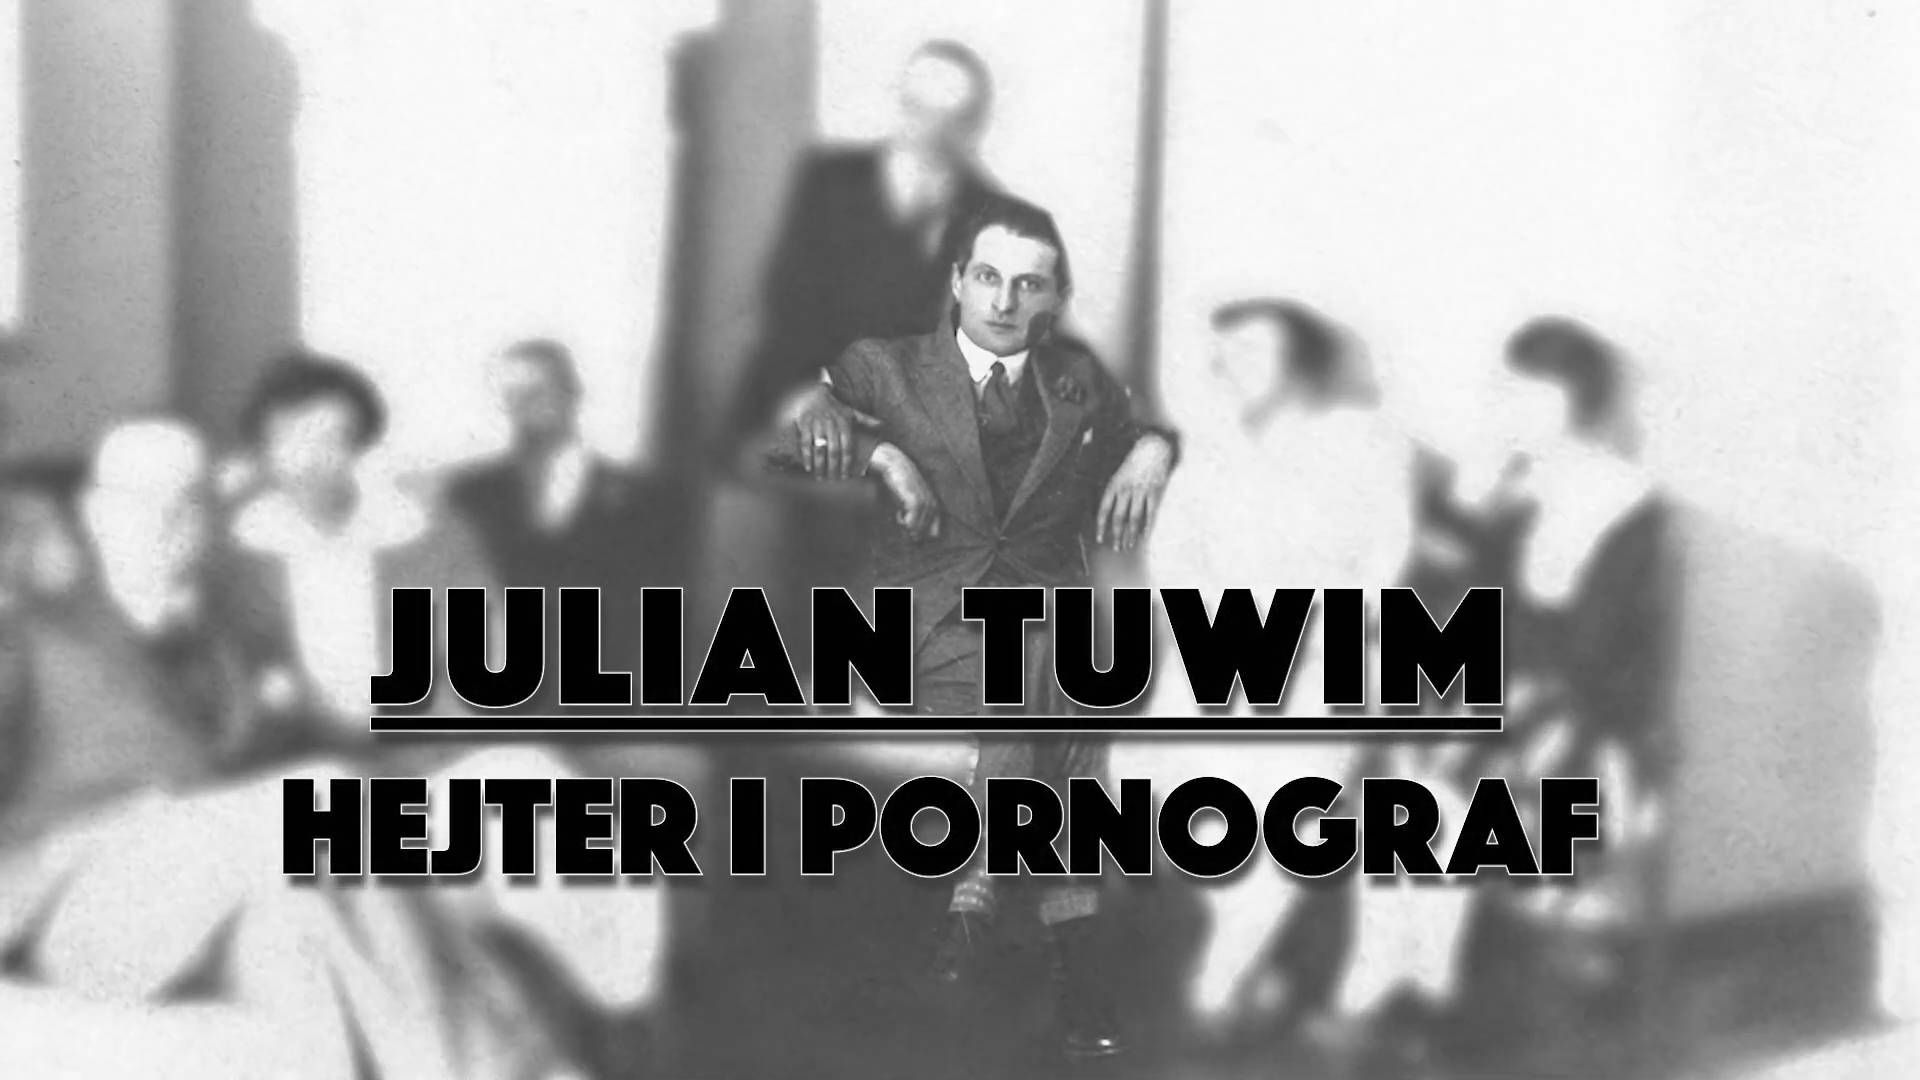 Julian Tuwim – hejter i pornograf